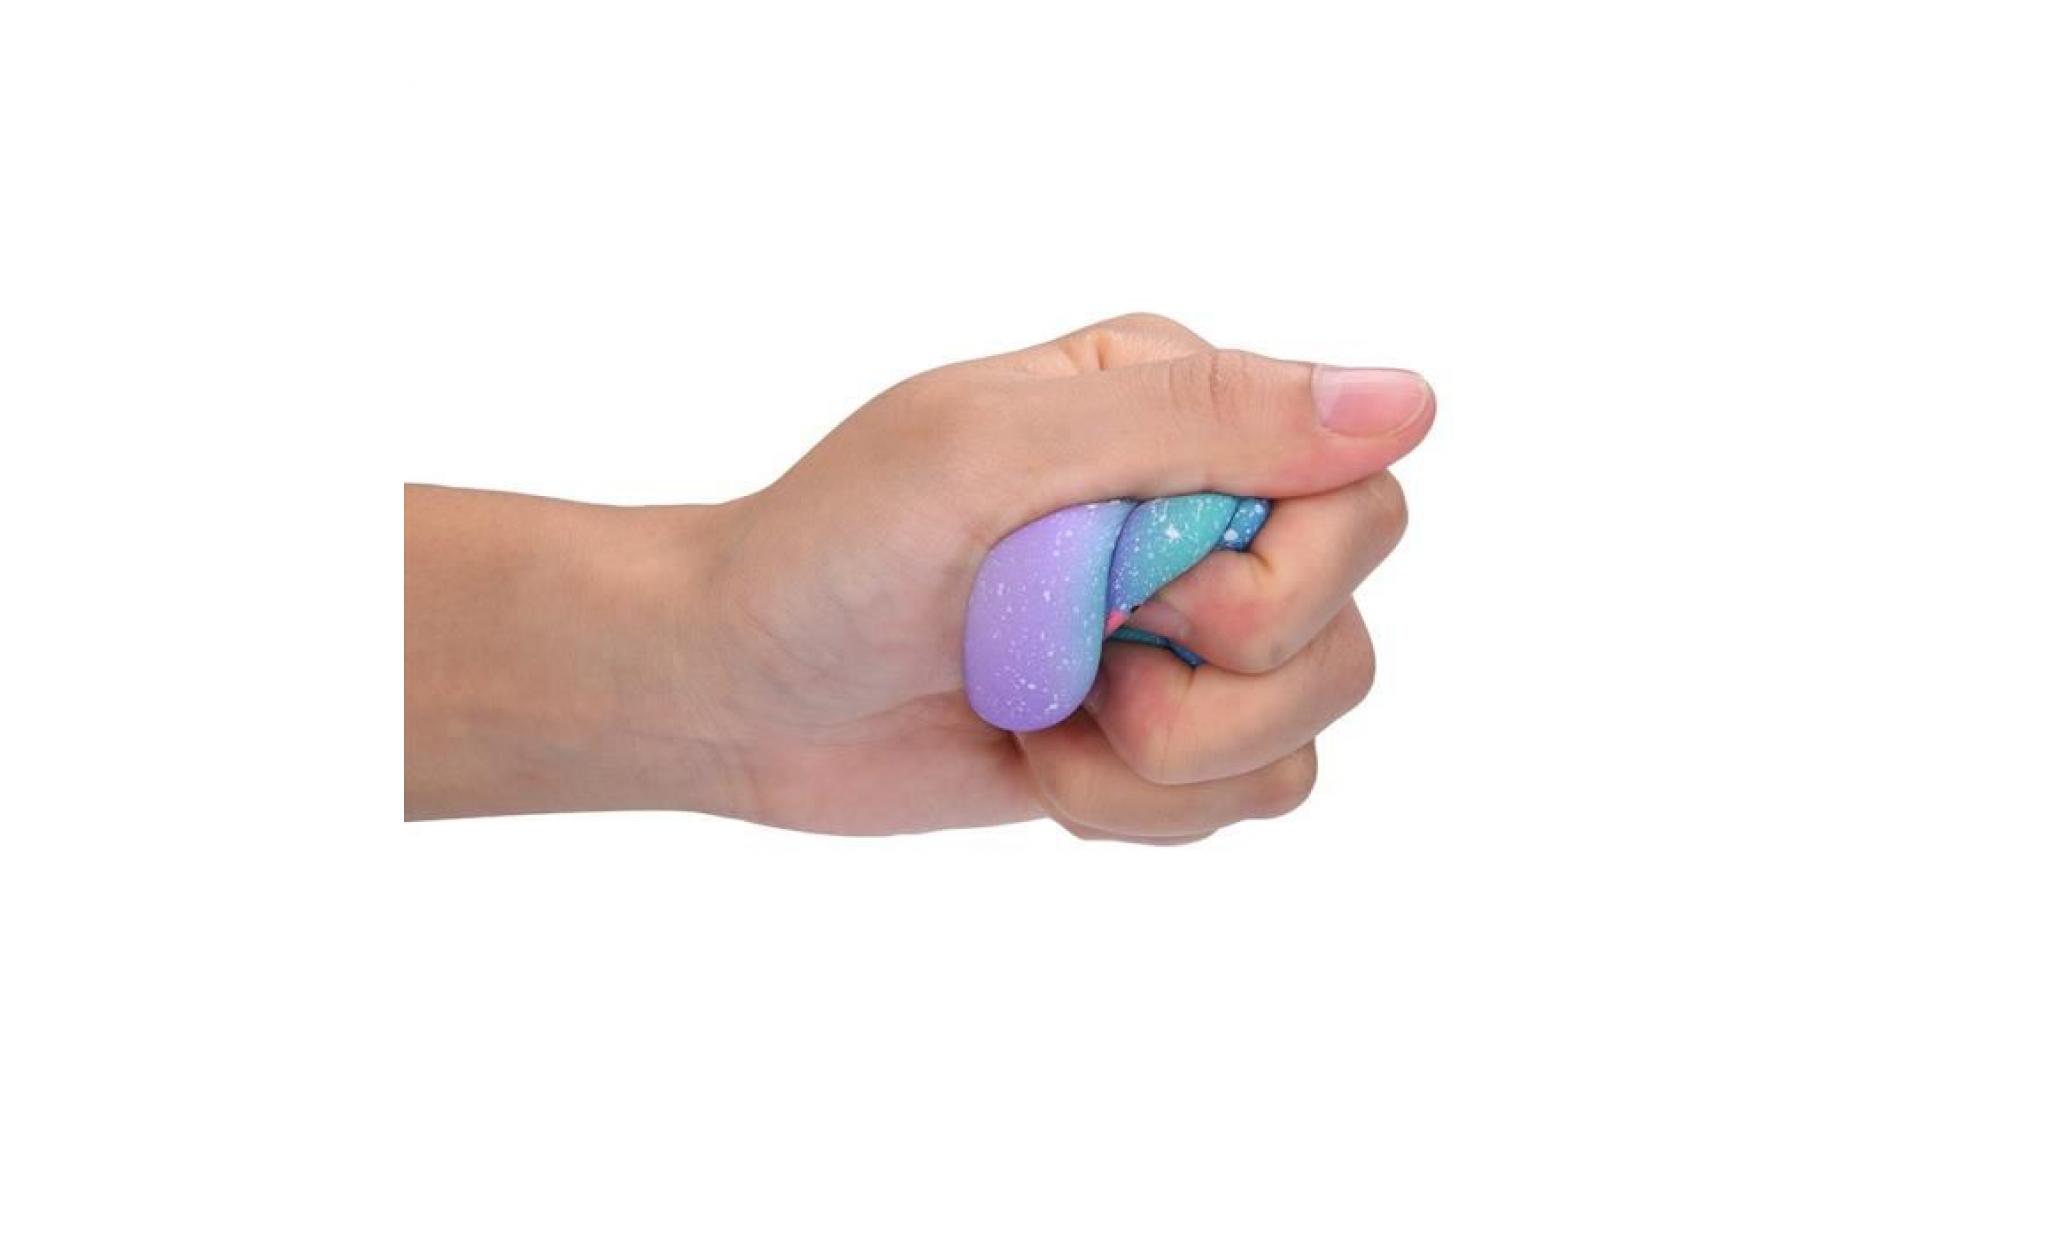 mosakog® galaxy poo odeur agréable squishies jouets squeeze lente hausse du stress toys releveur multicolore_5656